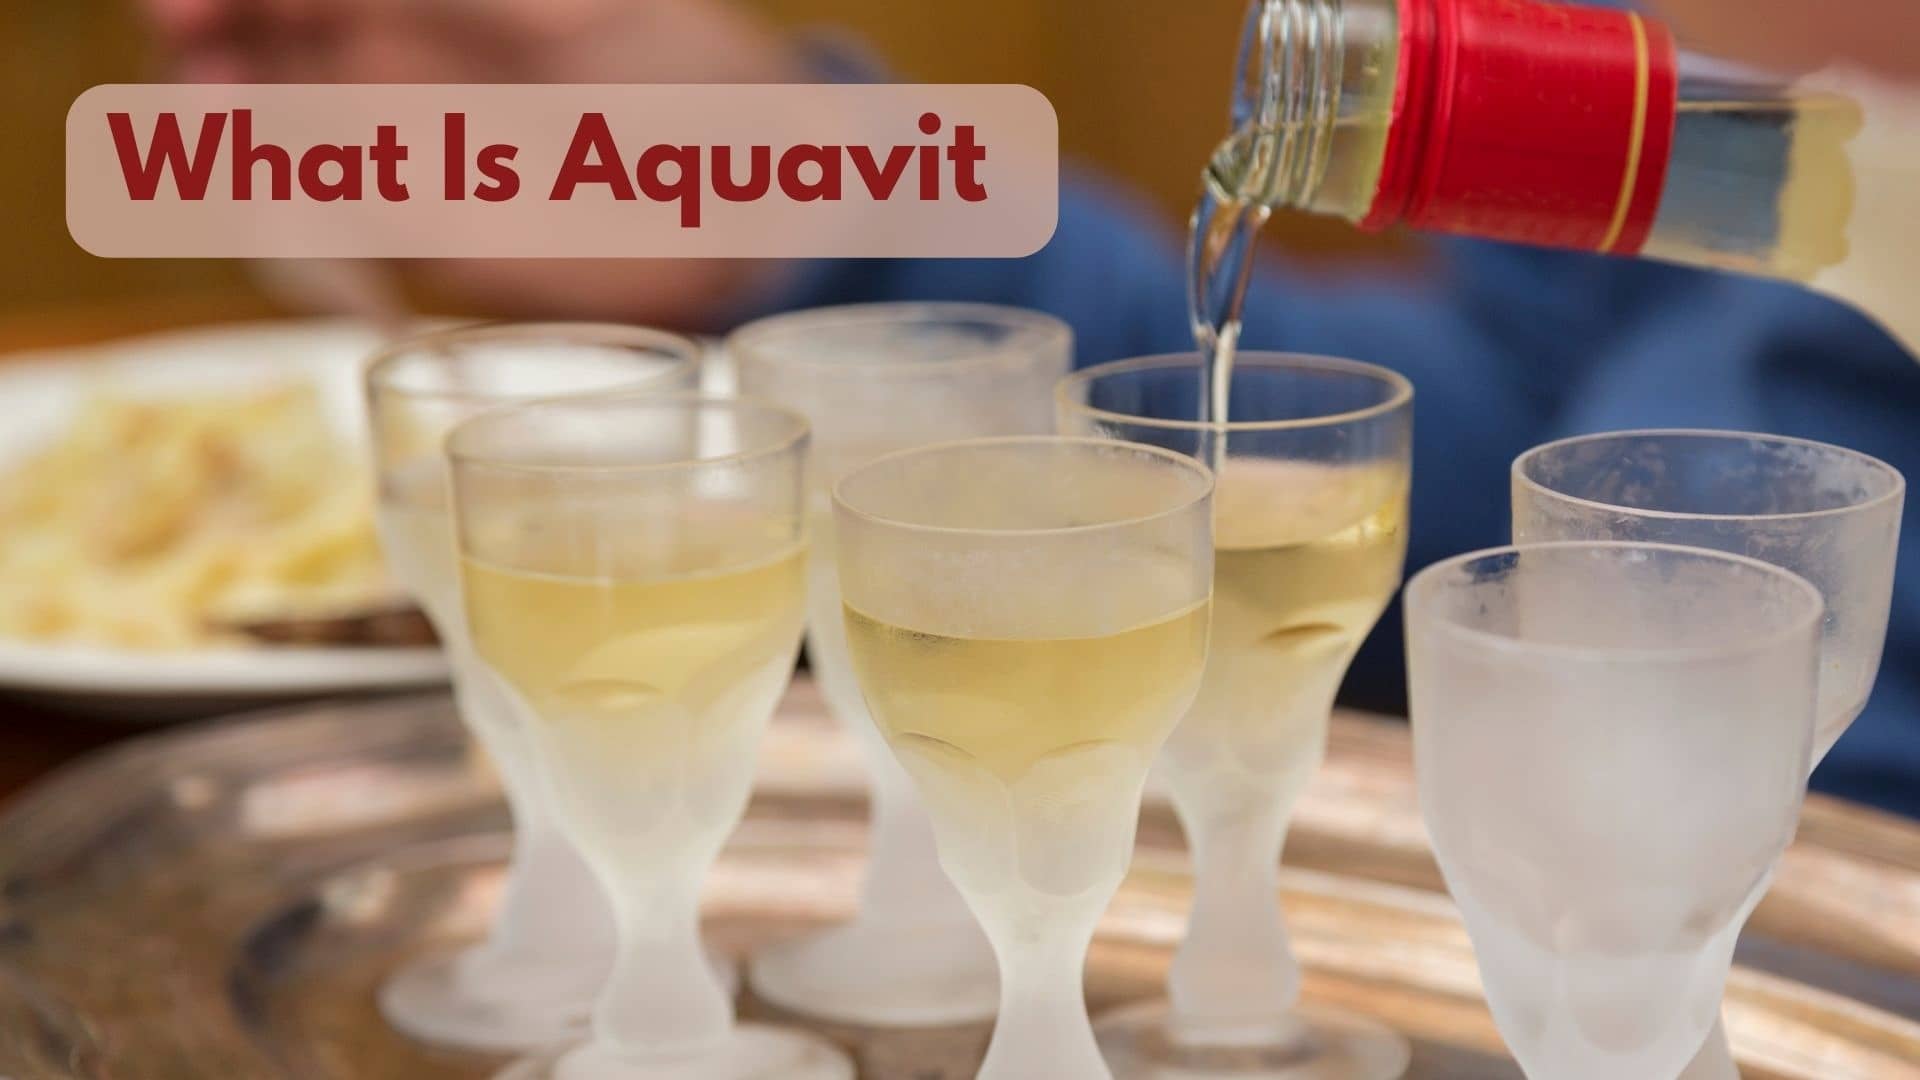 Could You Please Explain What Aquavit Is